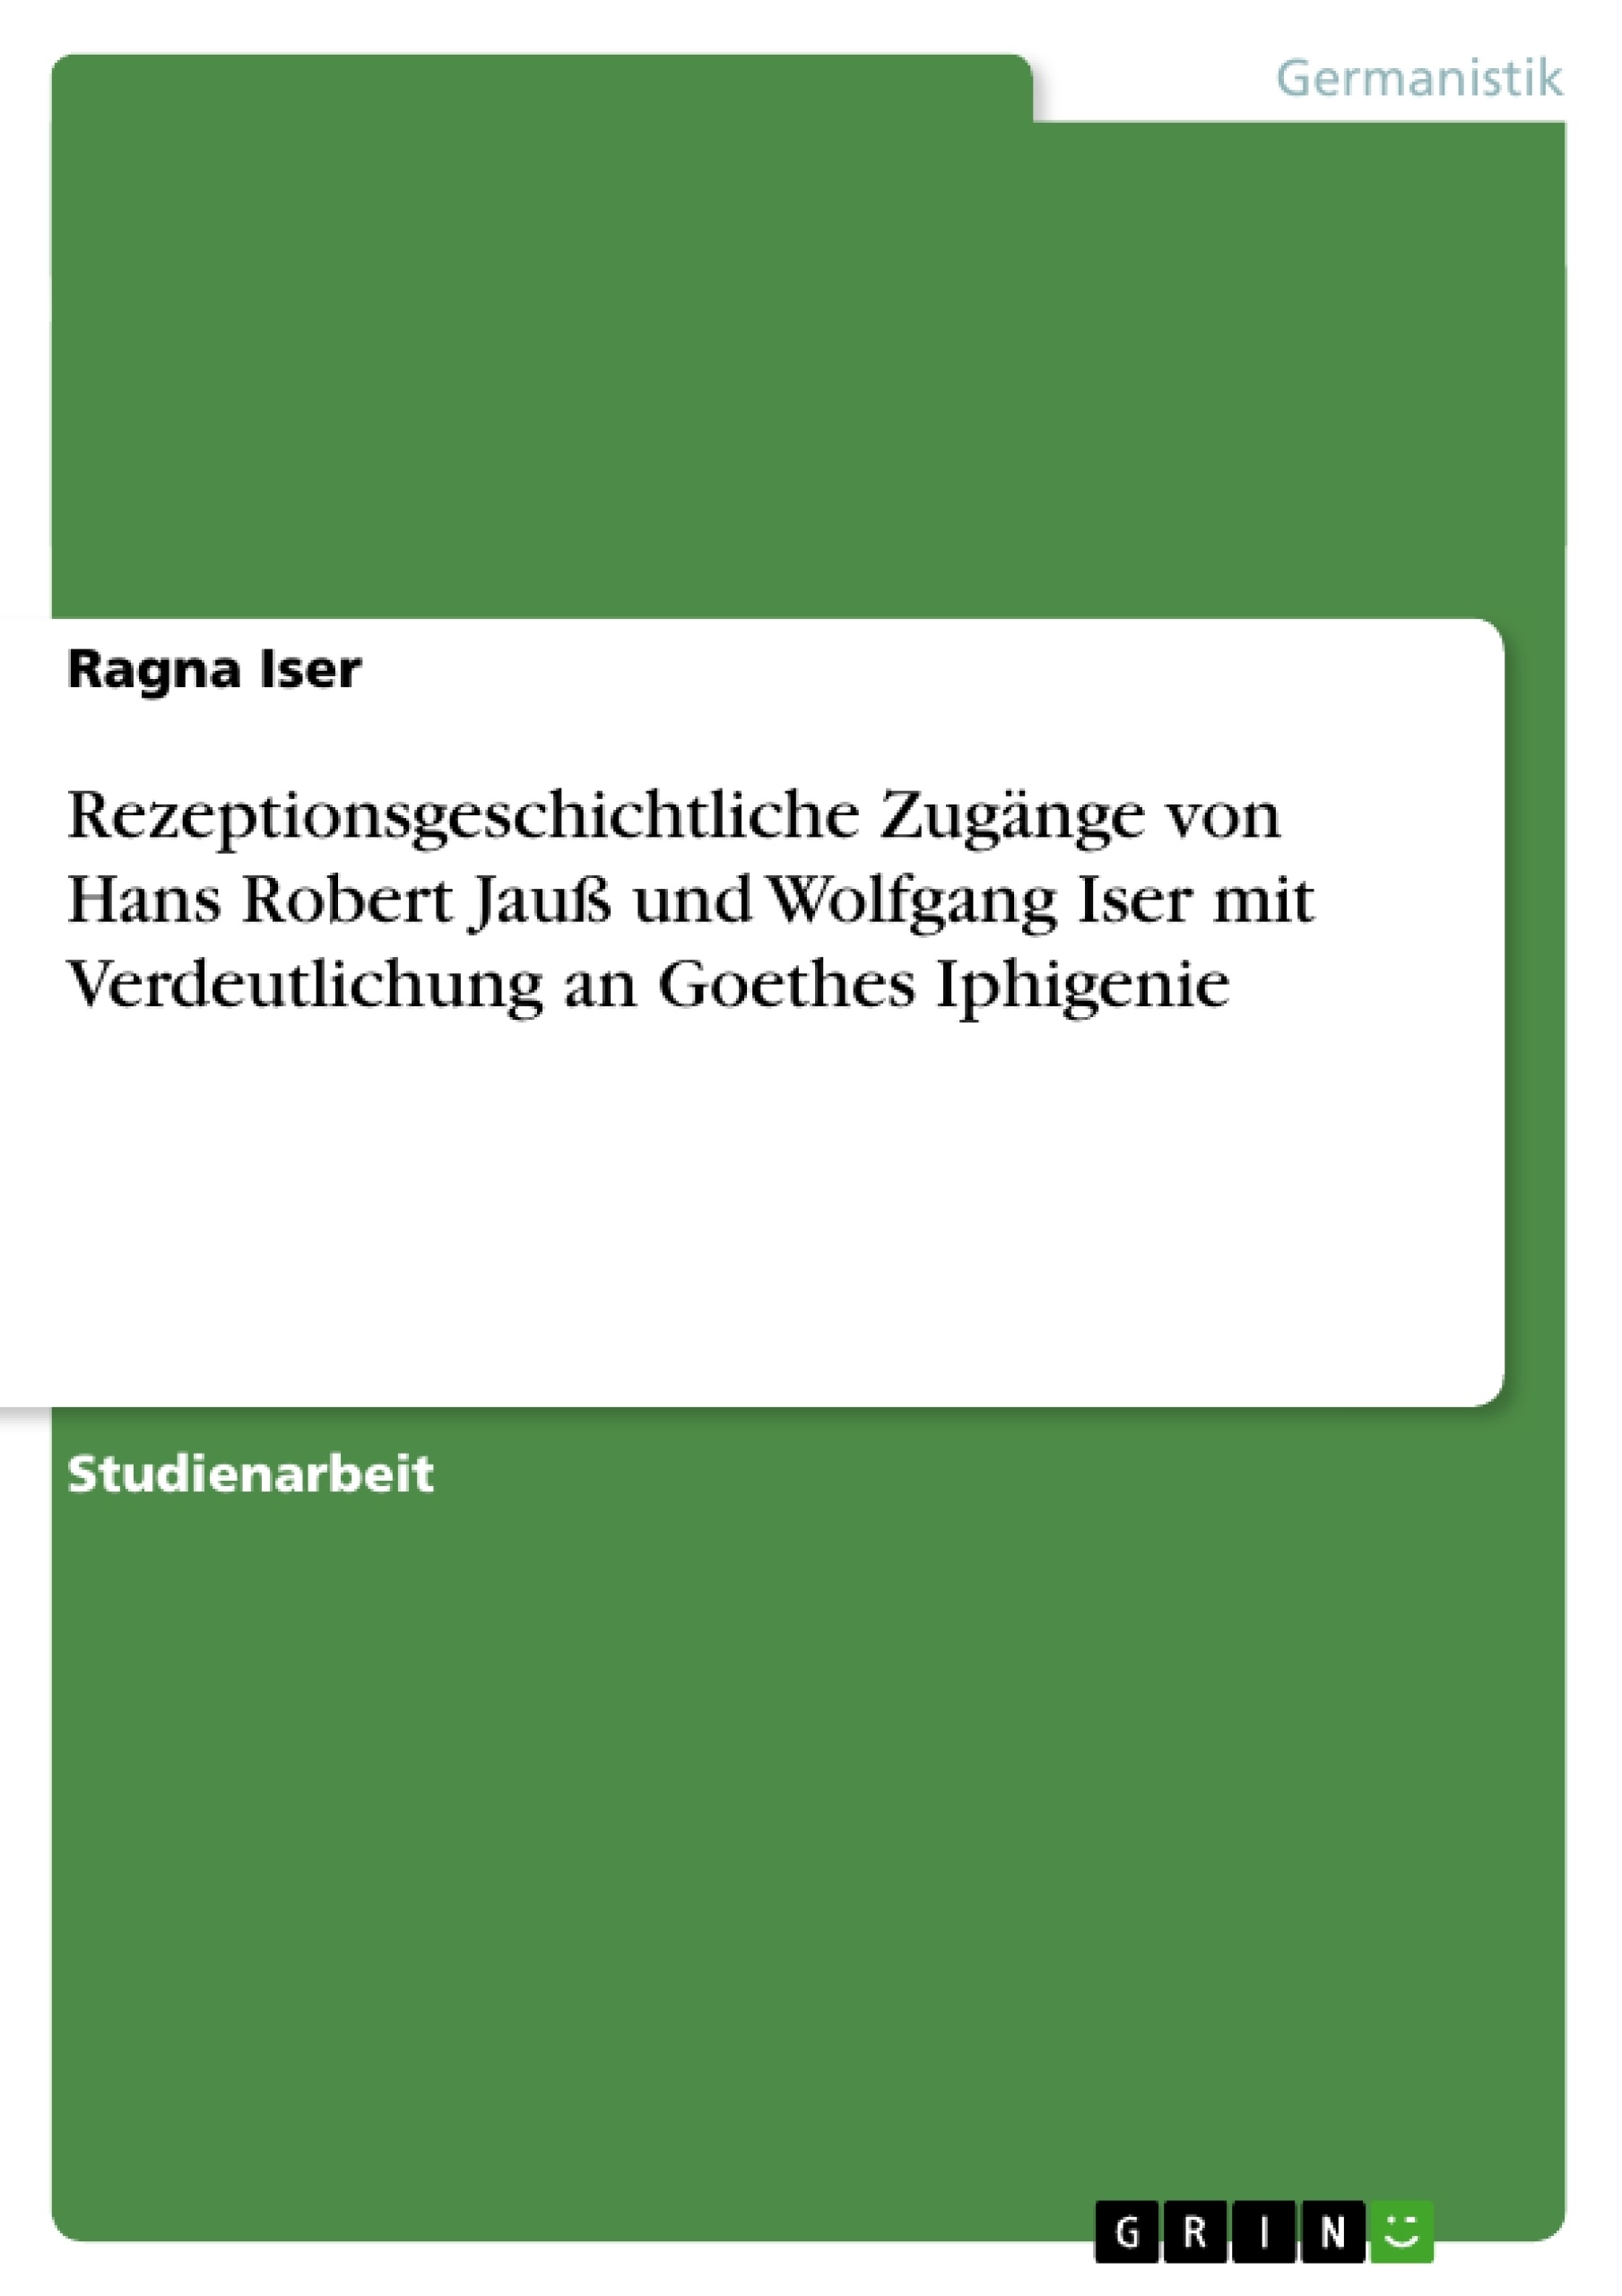 Título: Rezeptionsgeschichtliche Zugänge von Hans Robert Jauß und Wolfgang Iser mit Verdeutlichung an Goethes Iphigenie